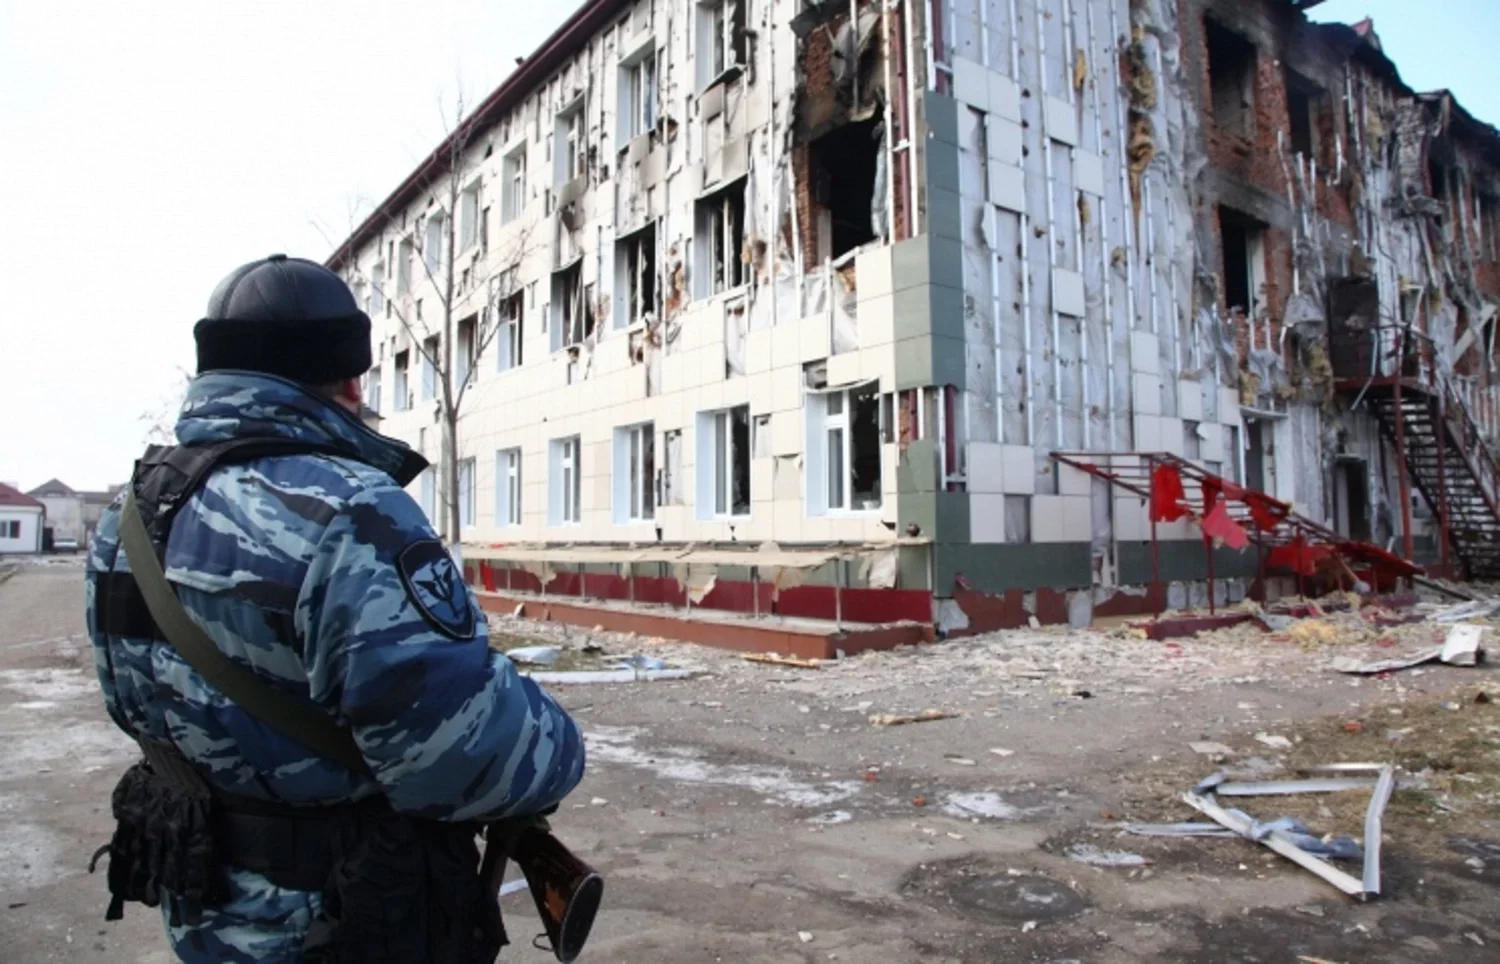 5 декабря 2014 г. Нападение боевиков на Грозный 2014. Нападение на дом печати в Грозном в 2014 году. Дом печати Грозный 2014.